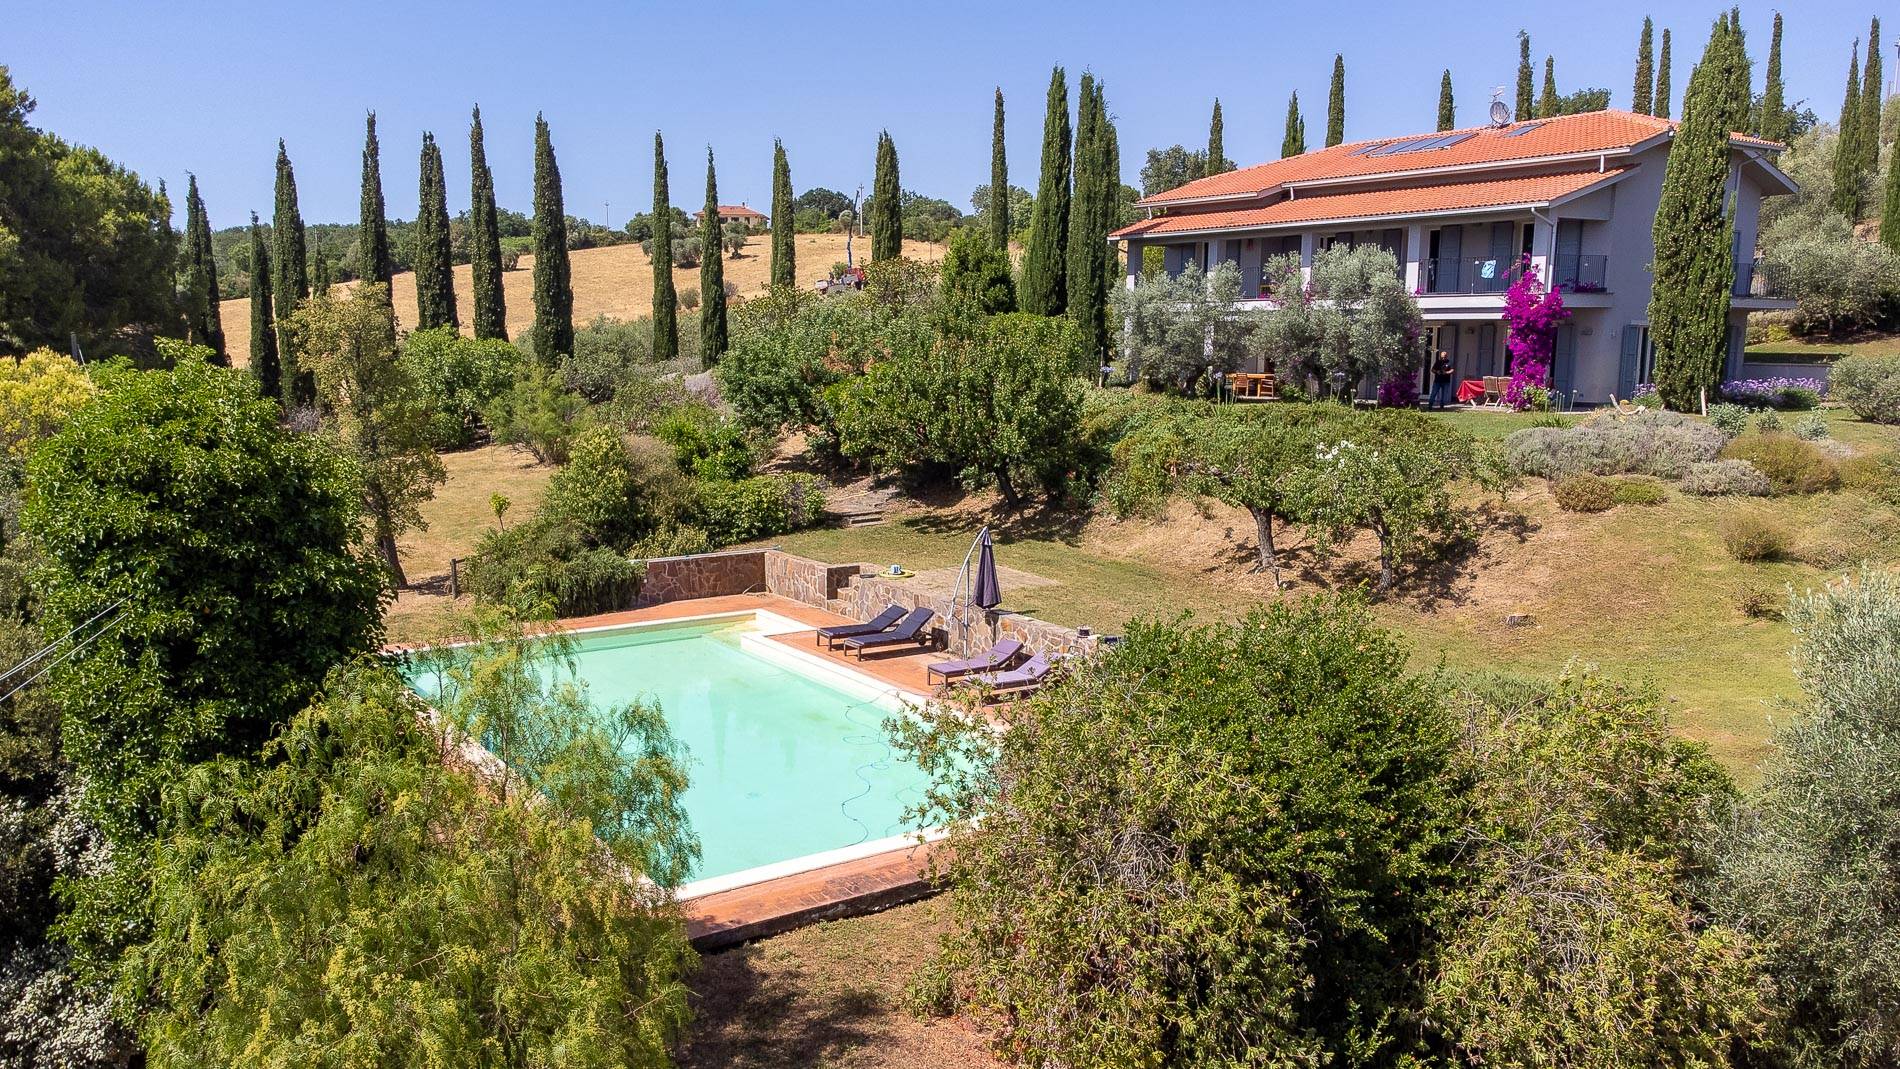 Villa in affitto a Magliano in Toscana, 11 locali, prezzo € 21.000 | CambioCasa.it